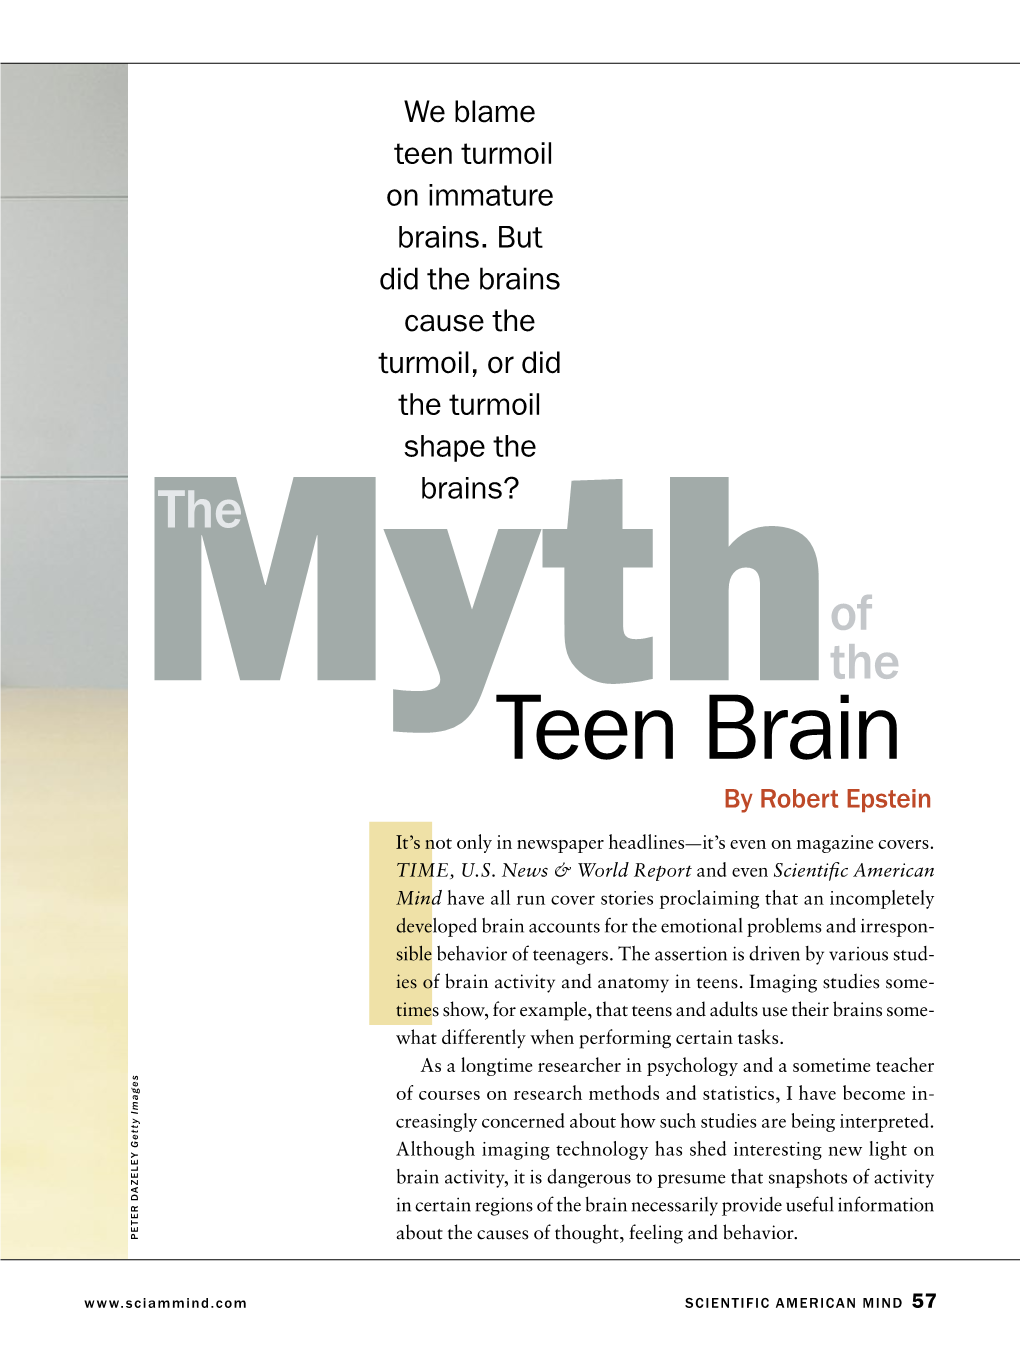 The Myth of the Teen Brain